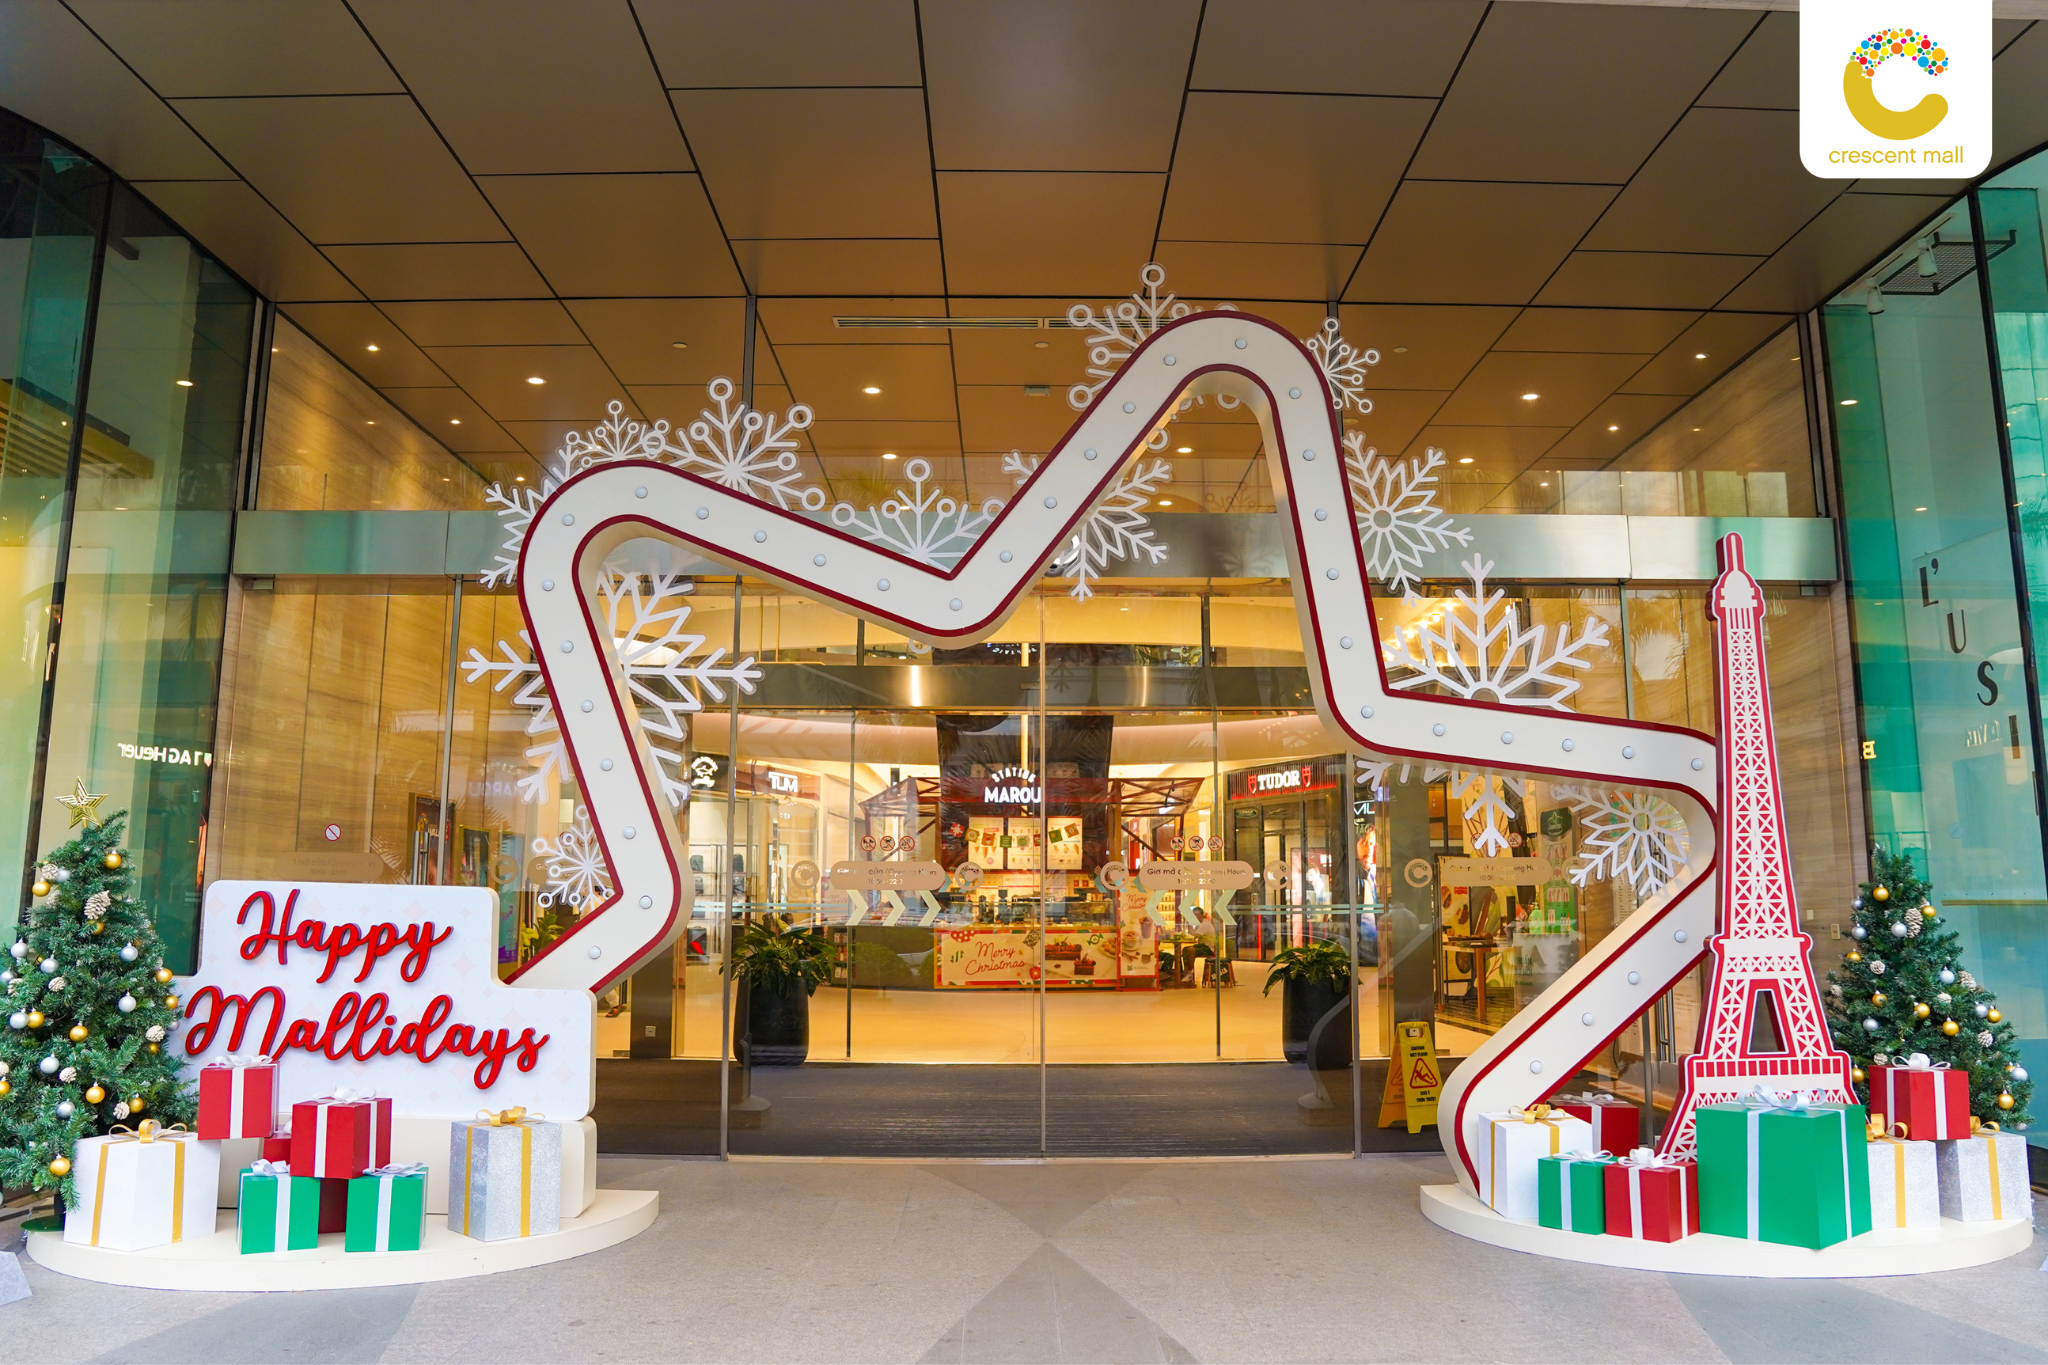 Giáng sinh rộn ràng tại “kinh đô ánh sáng” Crescent Mall